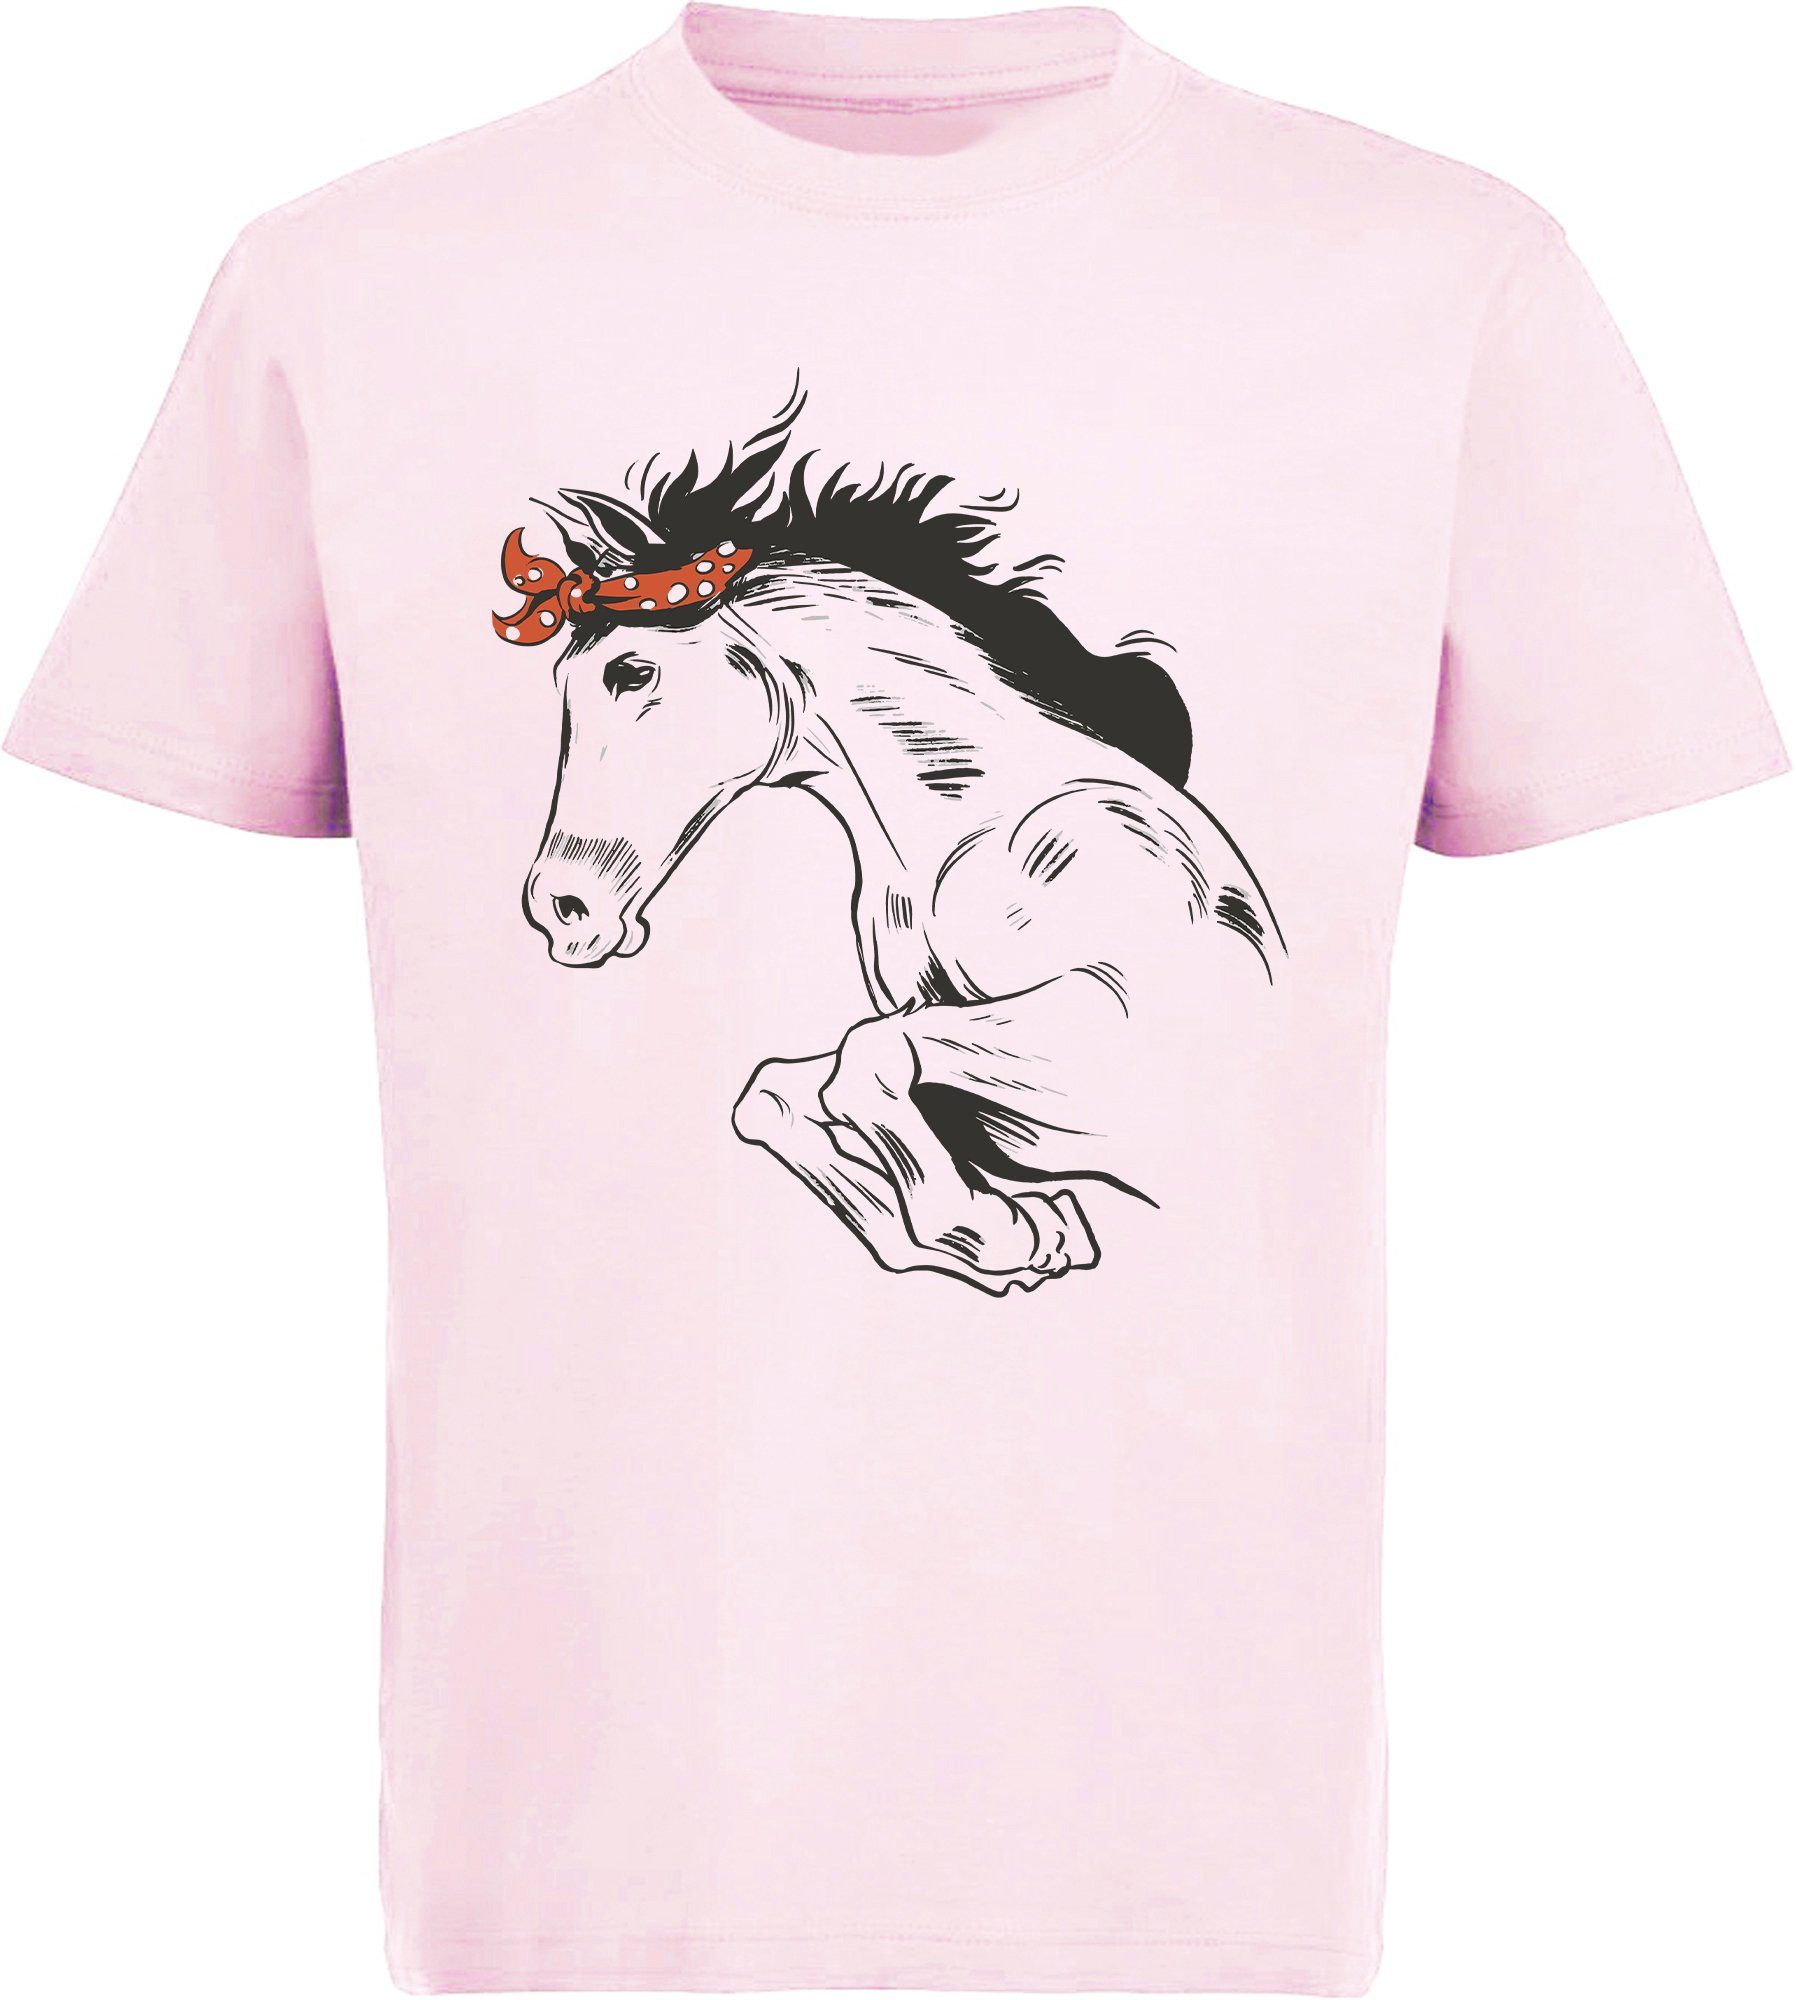 Kopftuch Springendes Pferd - mit Pferde MyDesign24 T-Shirt Print-Shirt mit Aufdruck, i170 bedrucktes rosa Baumwollshirt